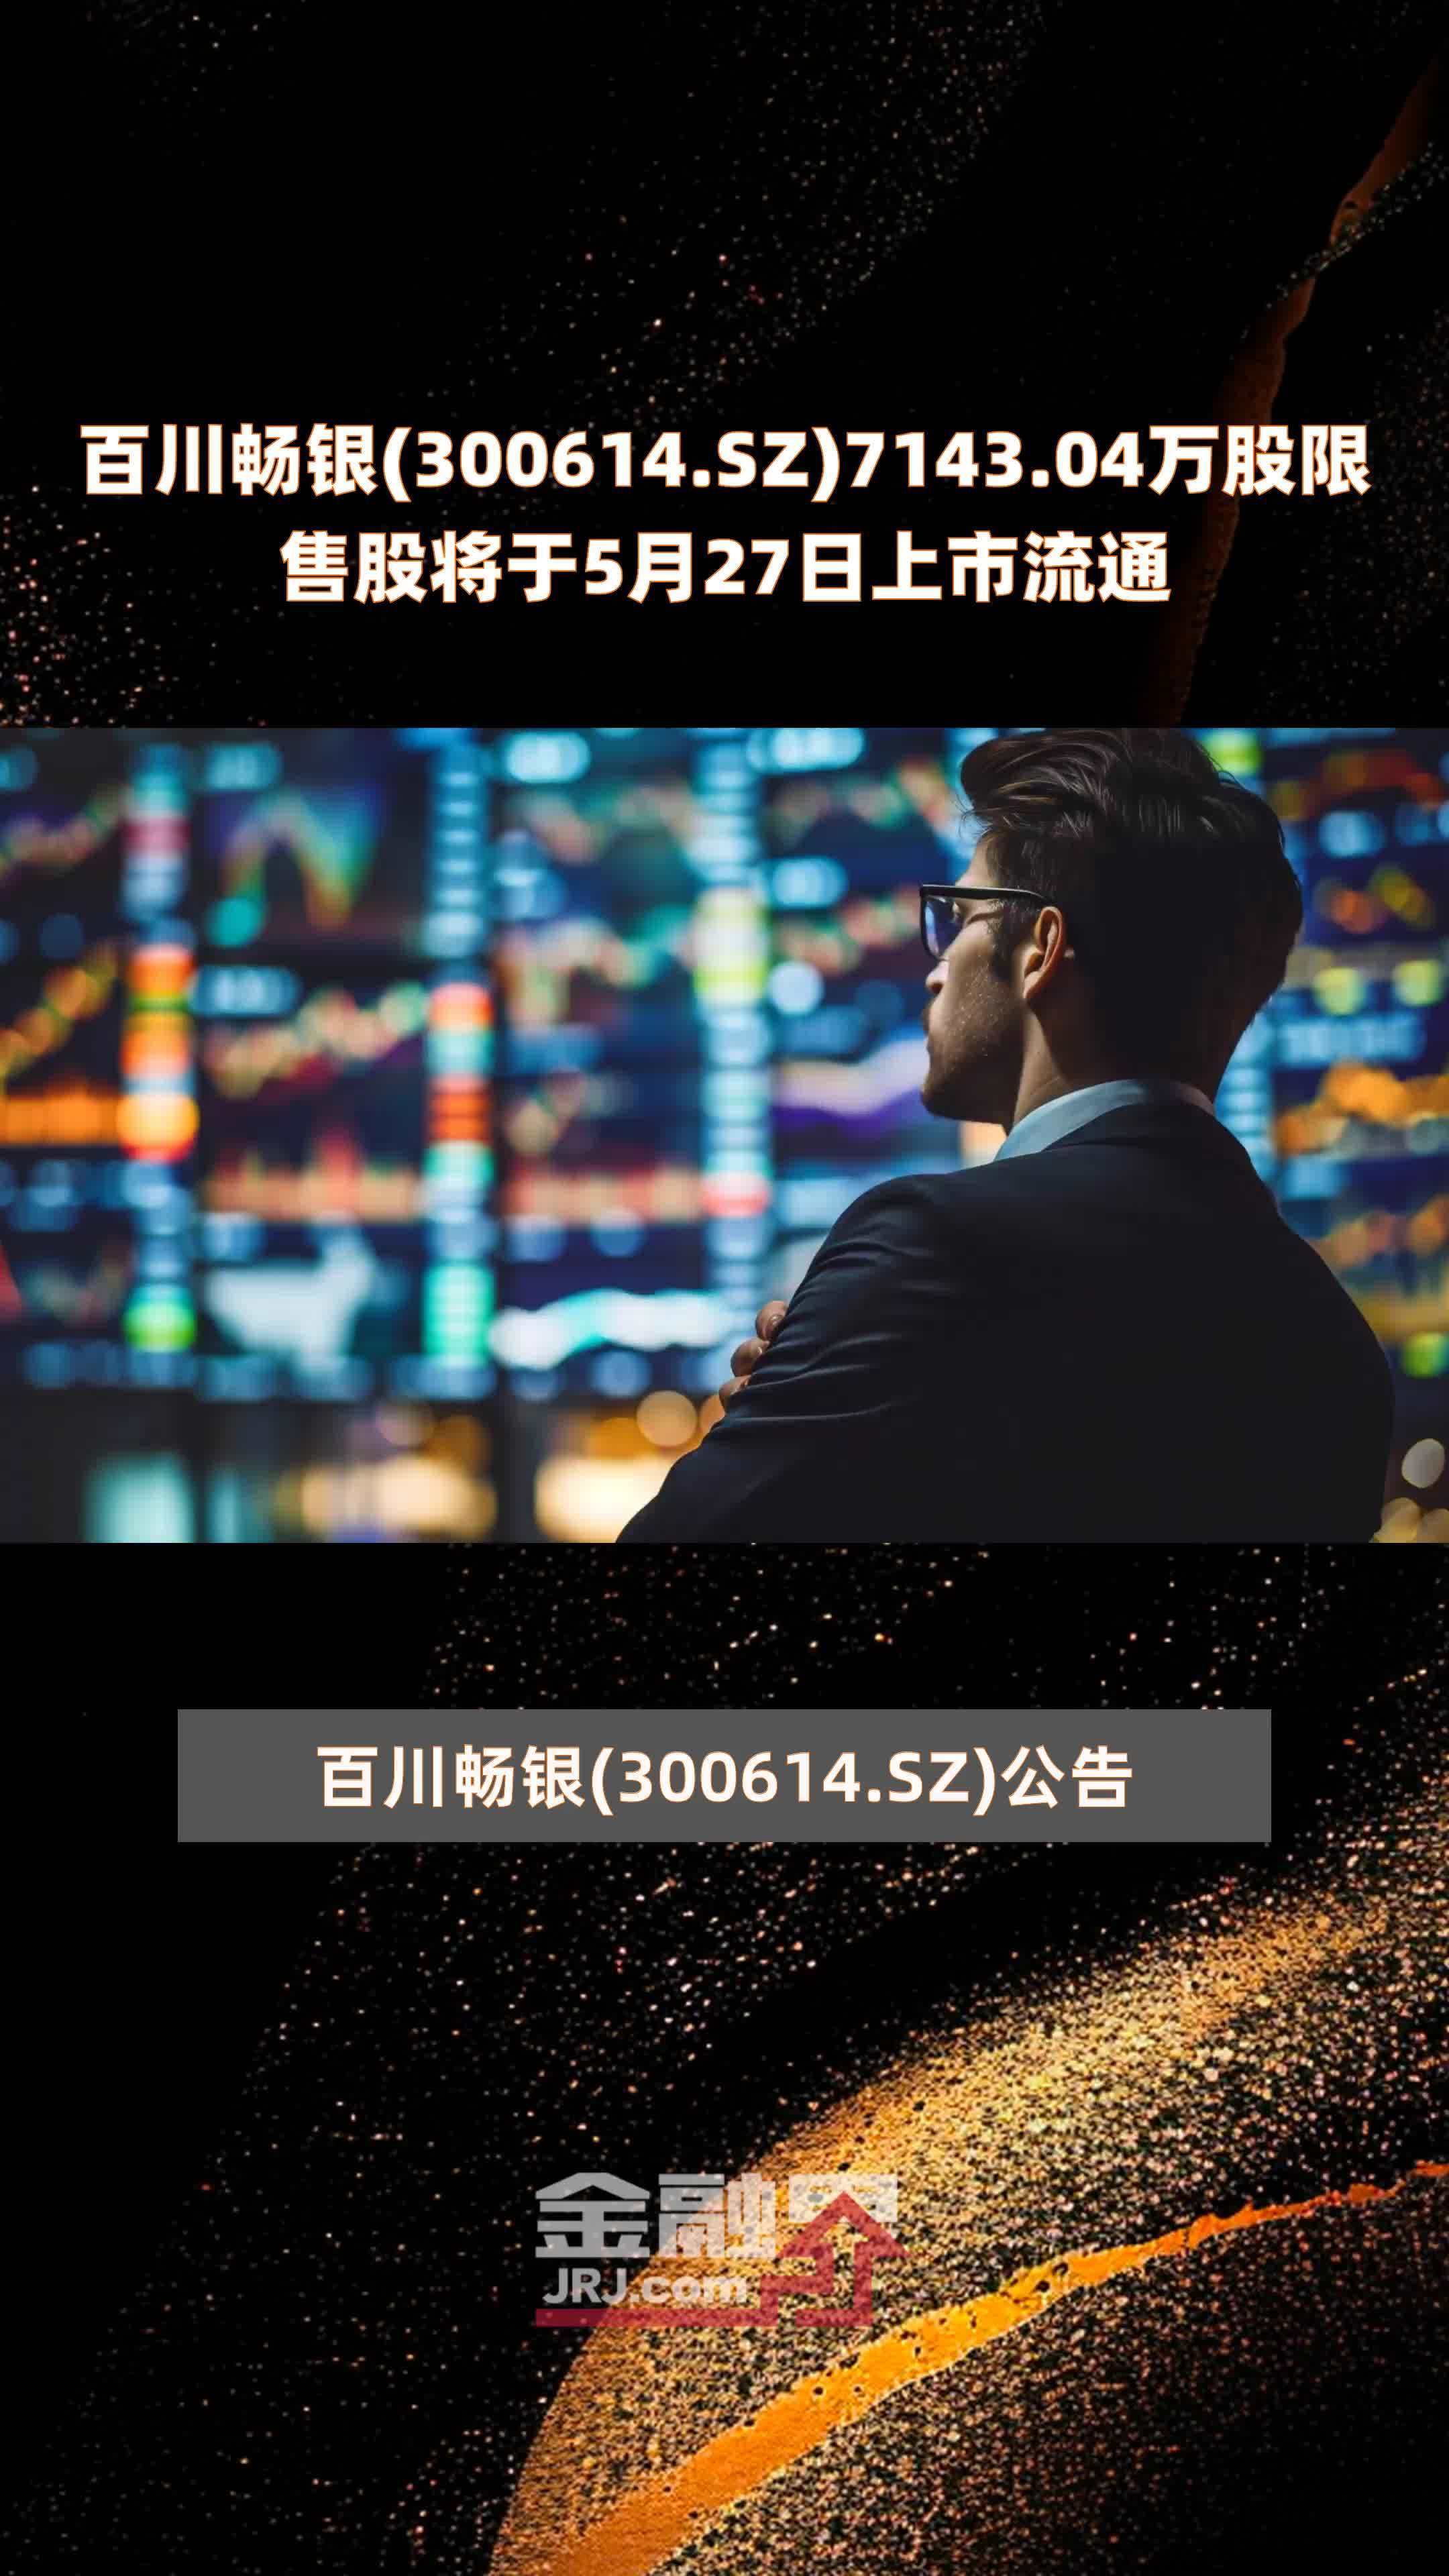 百川畅银300614sz714304万股限售股将于5月27日上市流通快报